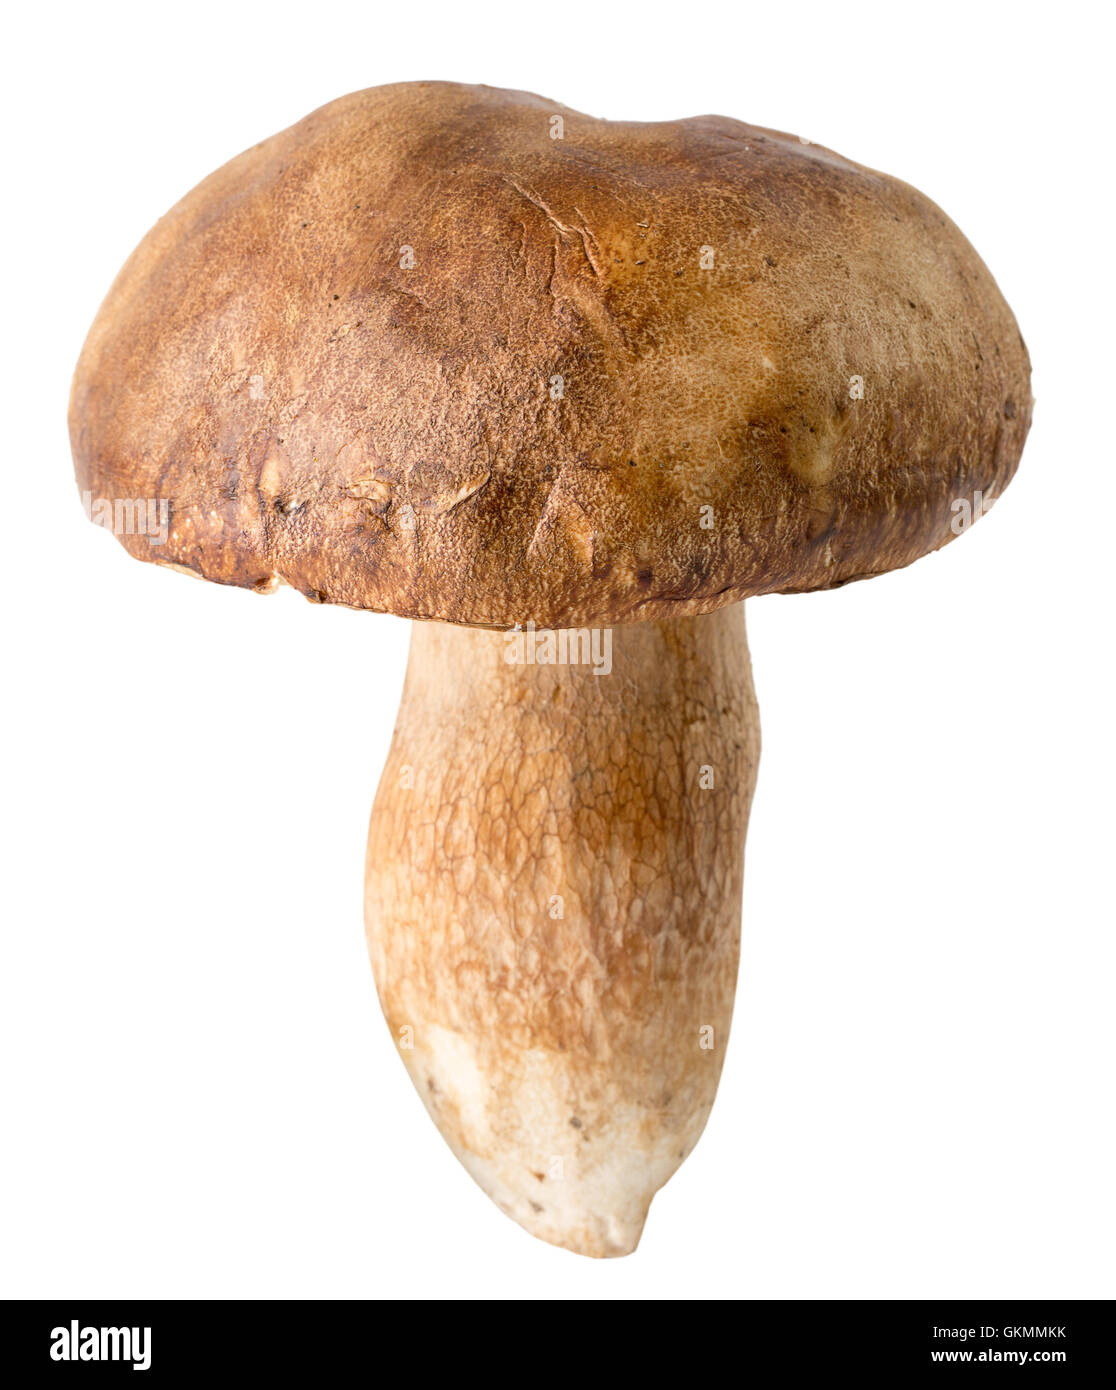 white mushroom isolated on the white background. Stock Photo